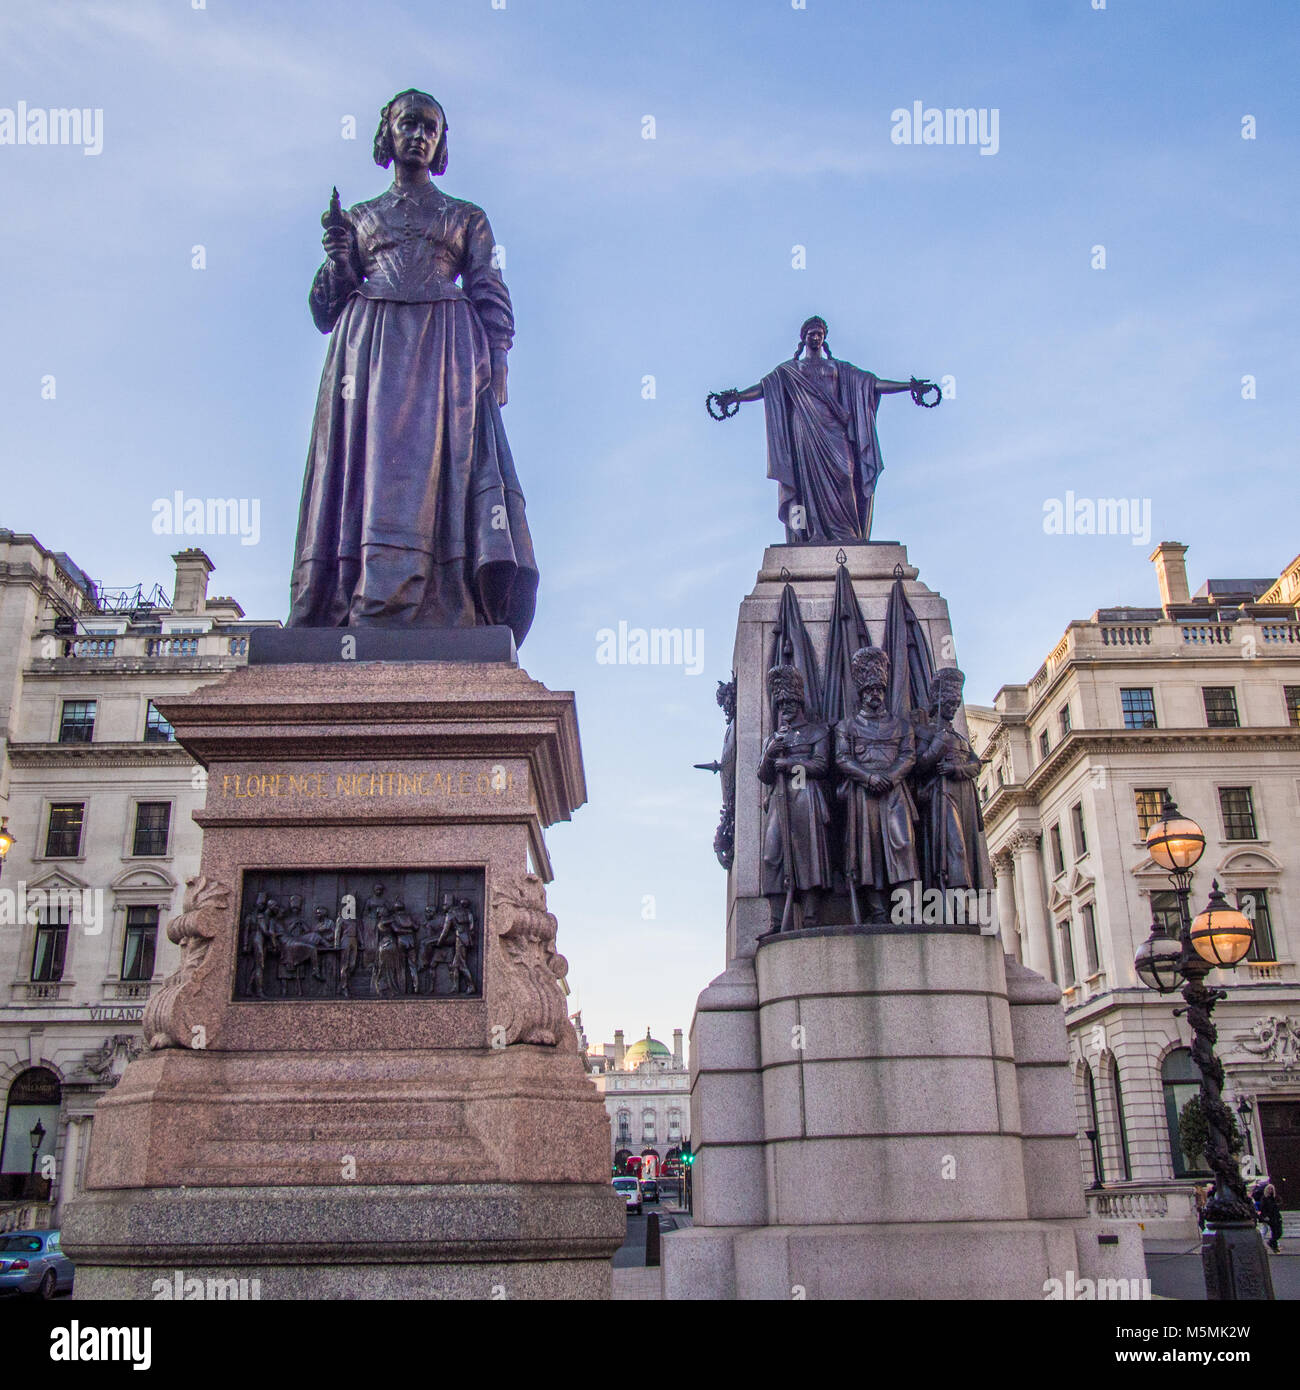 Florence Nightingale : gauche avec lampe statue. Droite : Guards Memorial de la guerre de Crimée, Waterloo, London. Banque D'Images